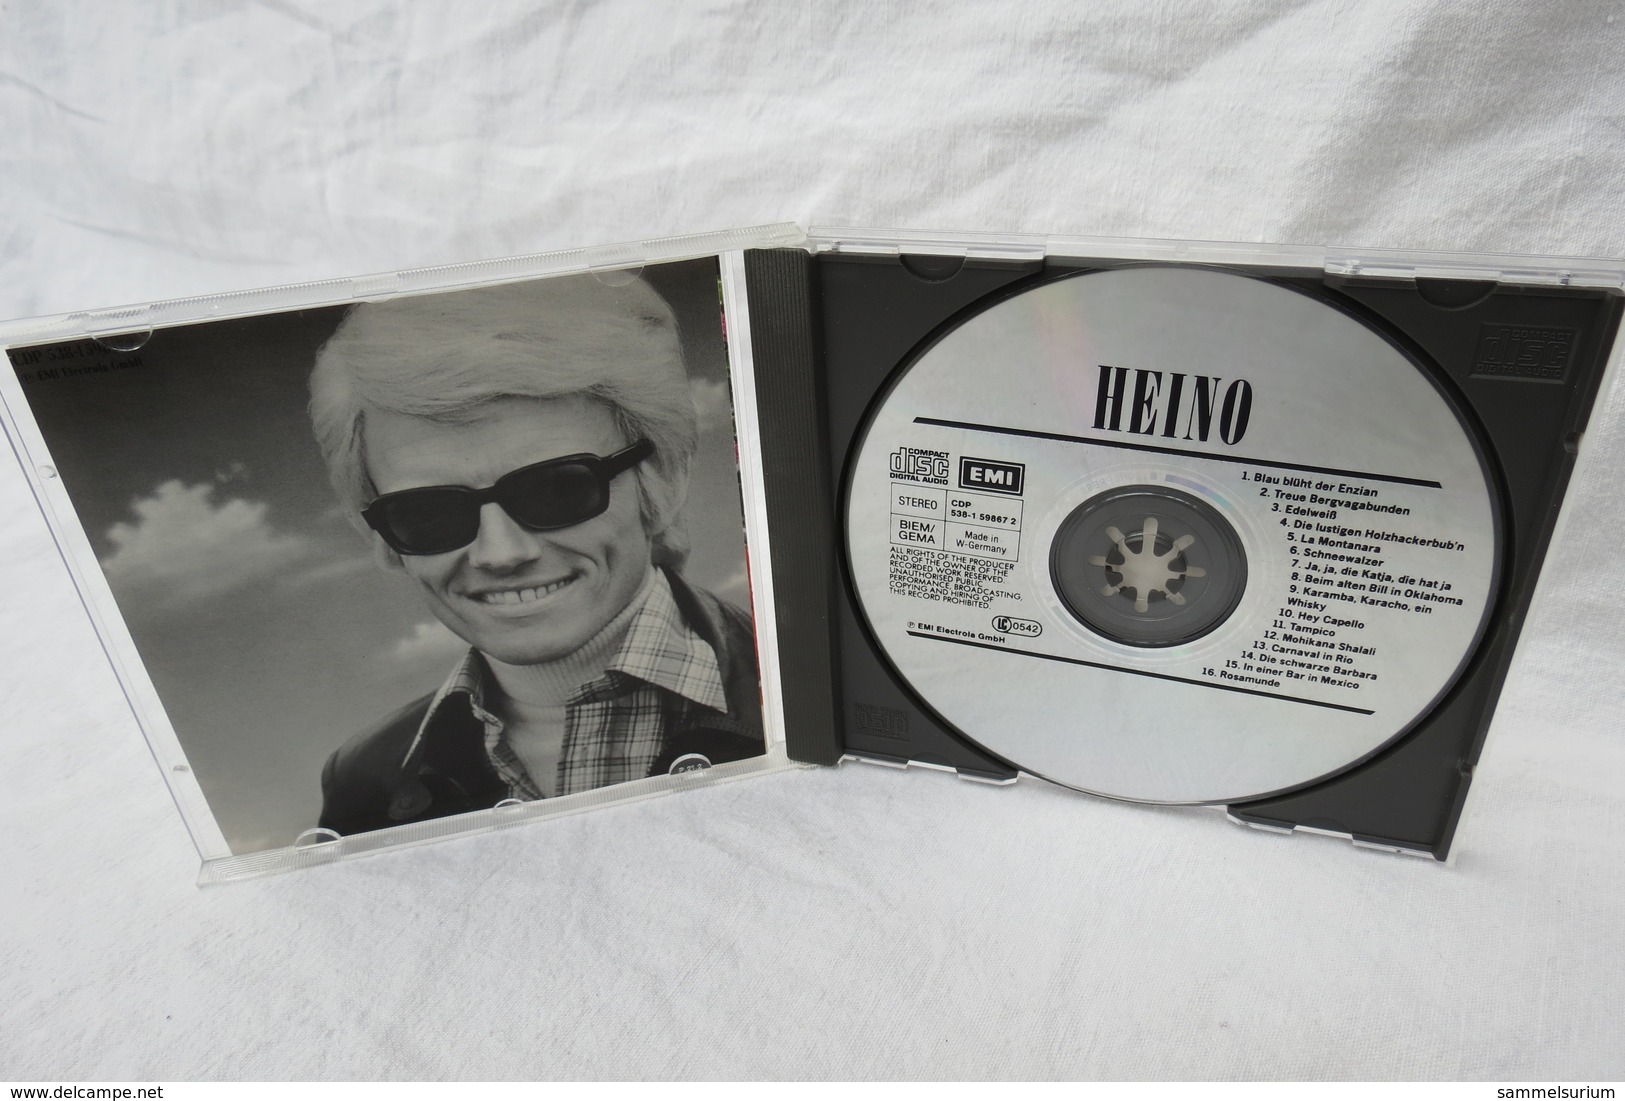 CD "Heino" Gold Collection - Sonstige - Deutsche Musik